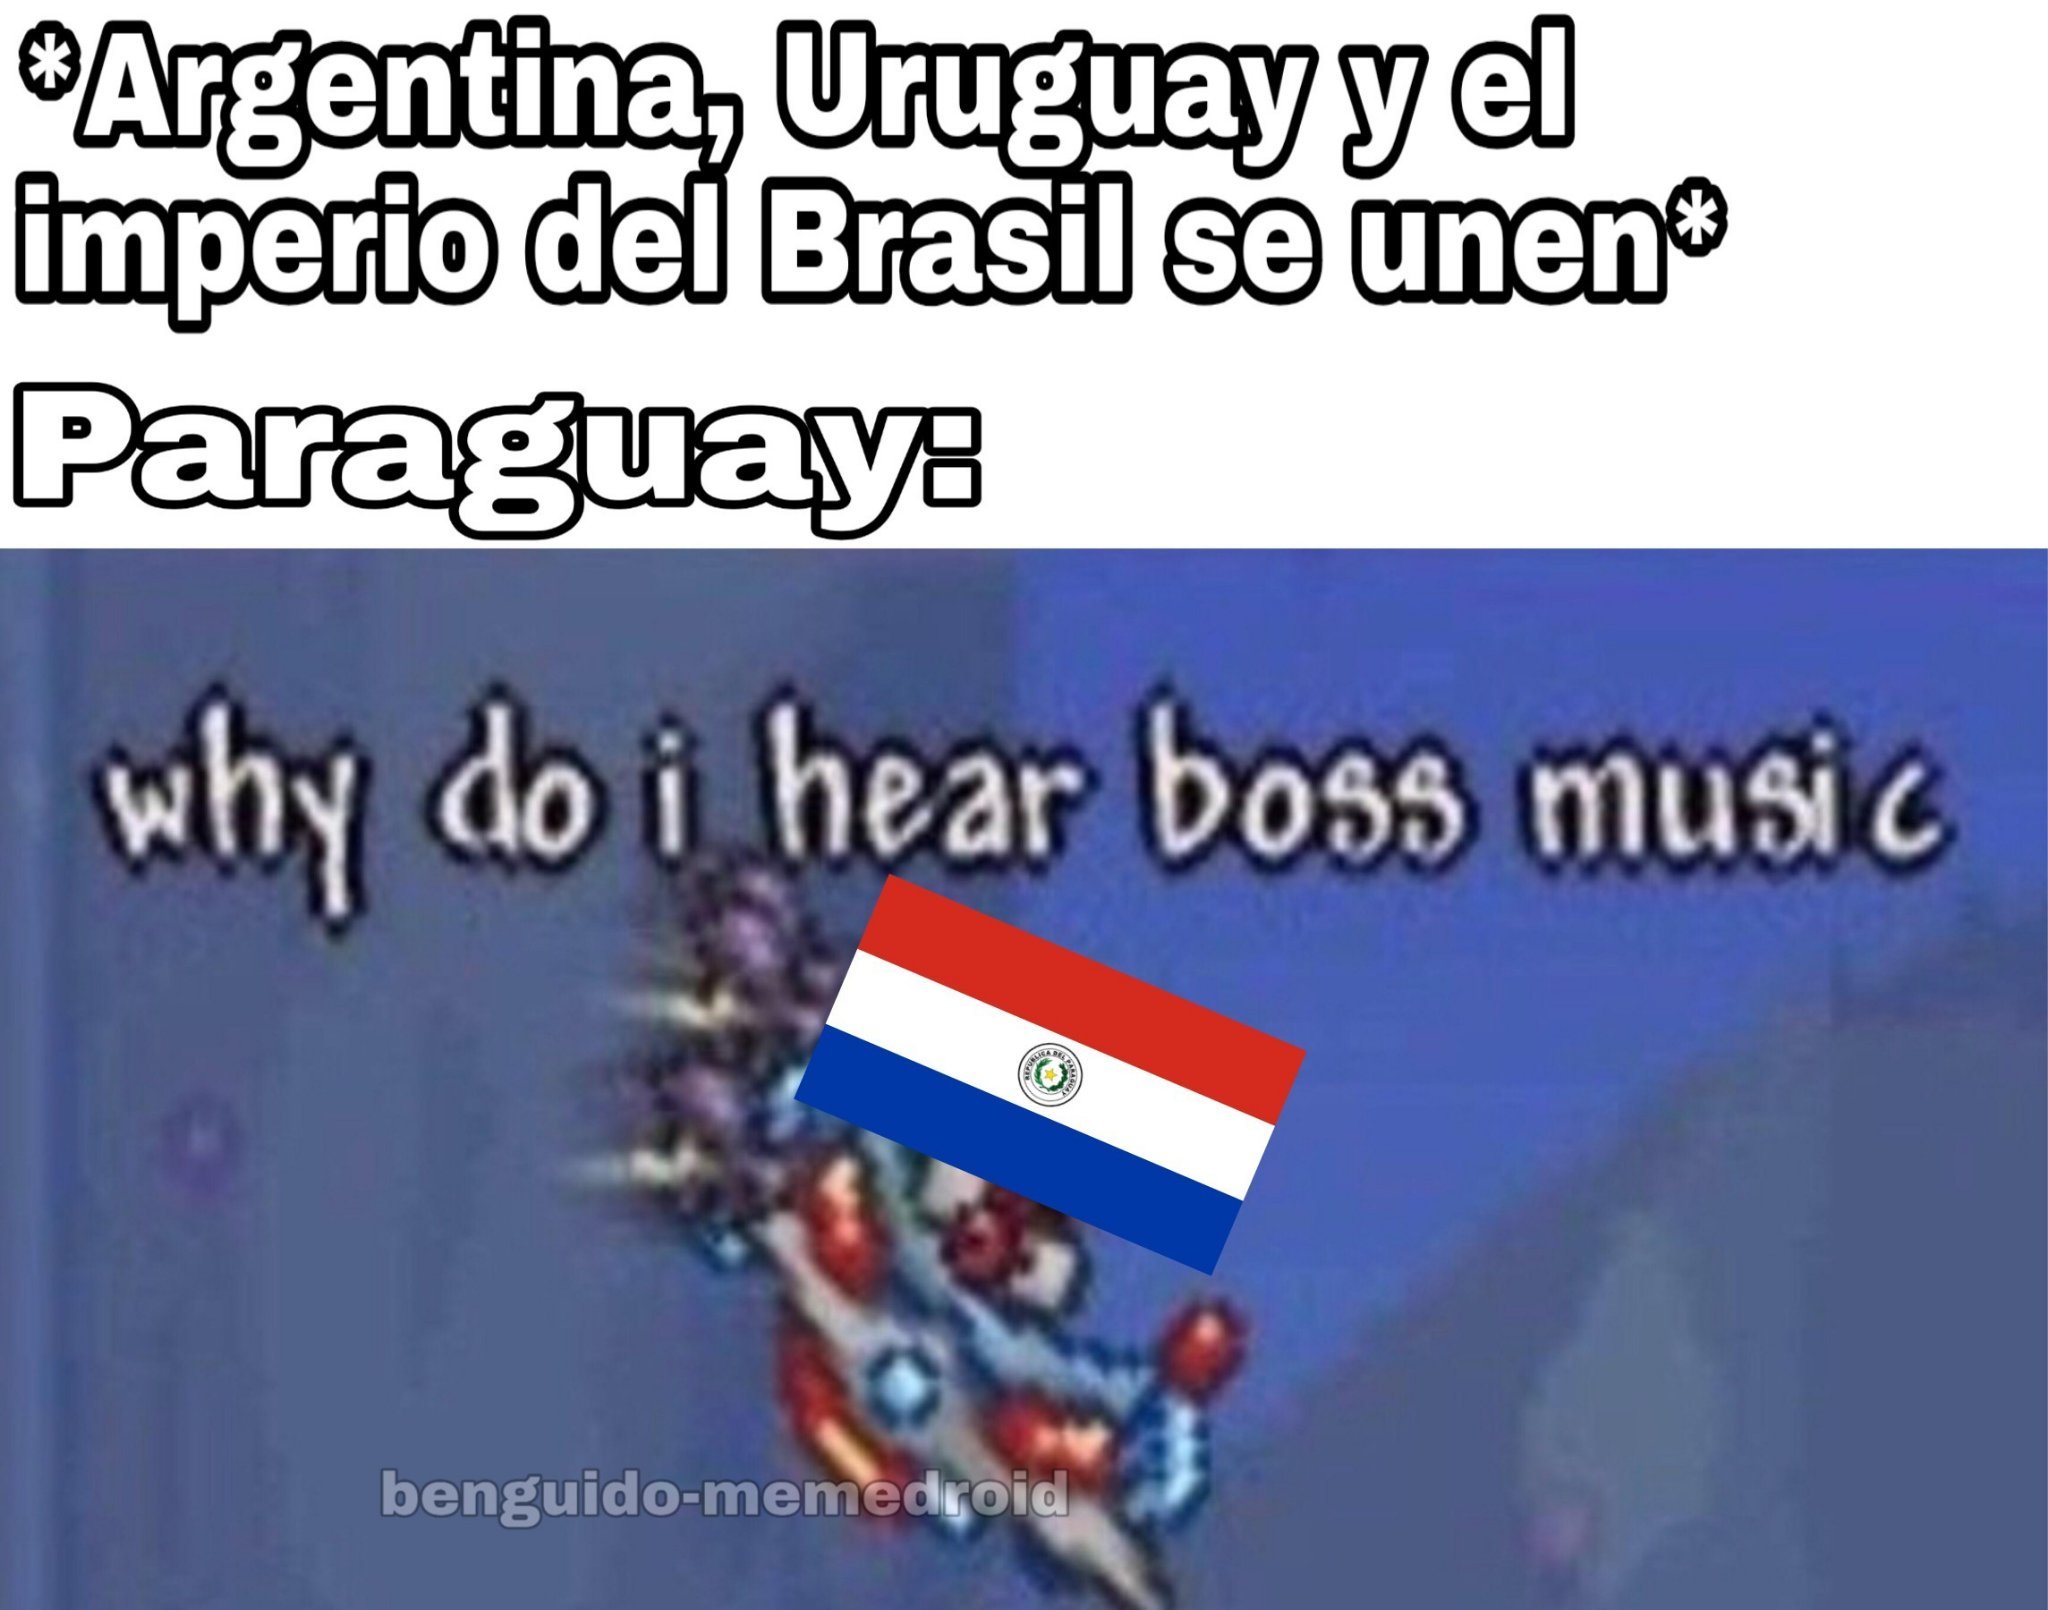 Pobre paraguai :'( - meme